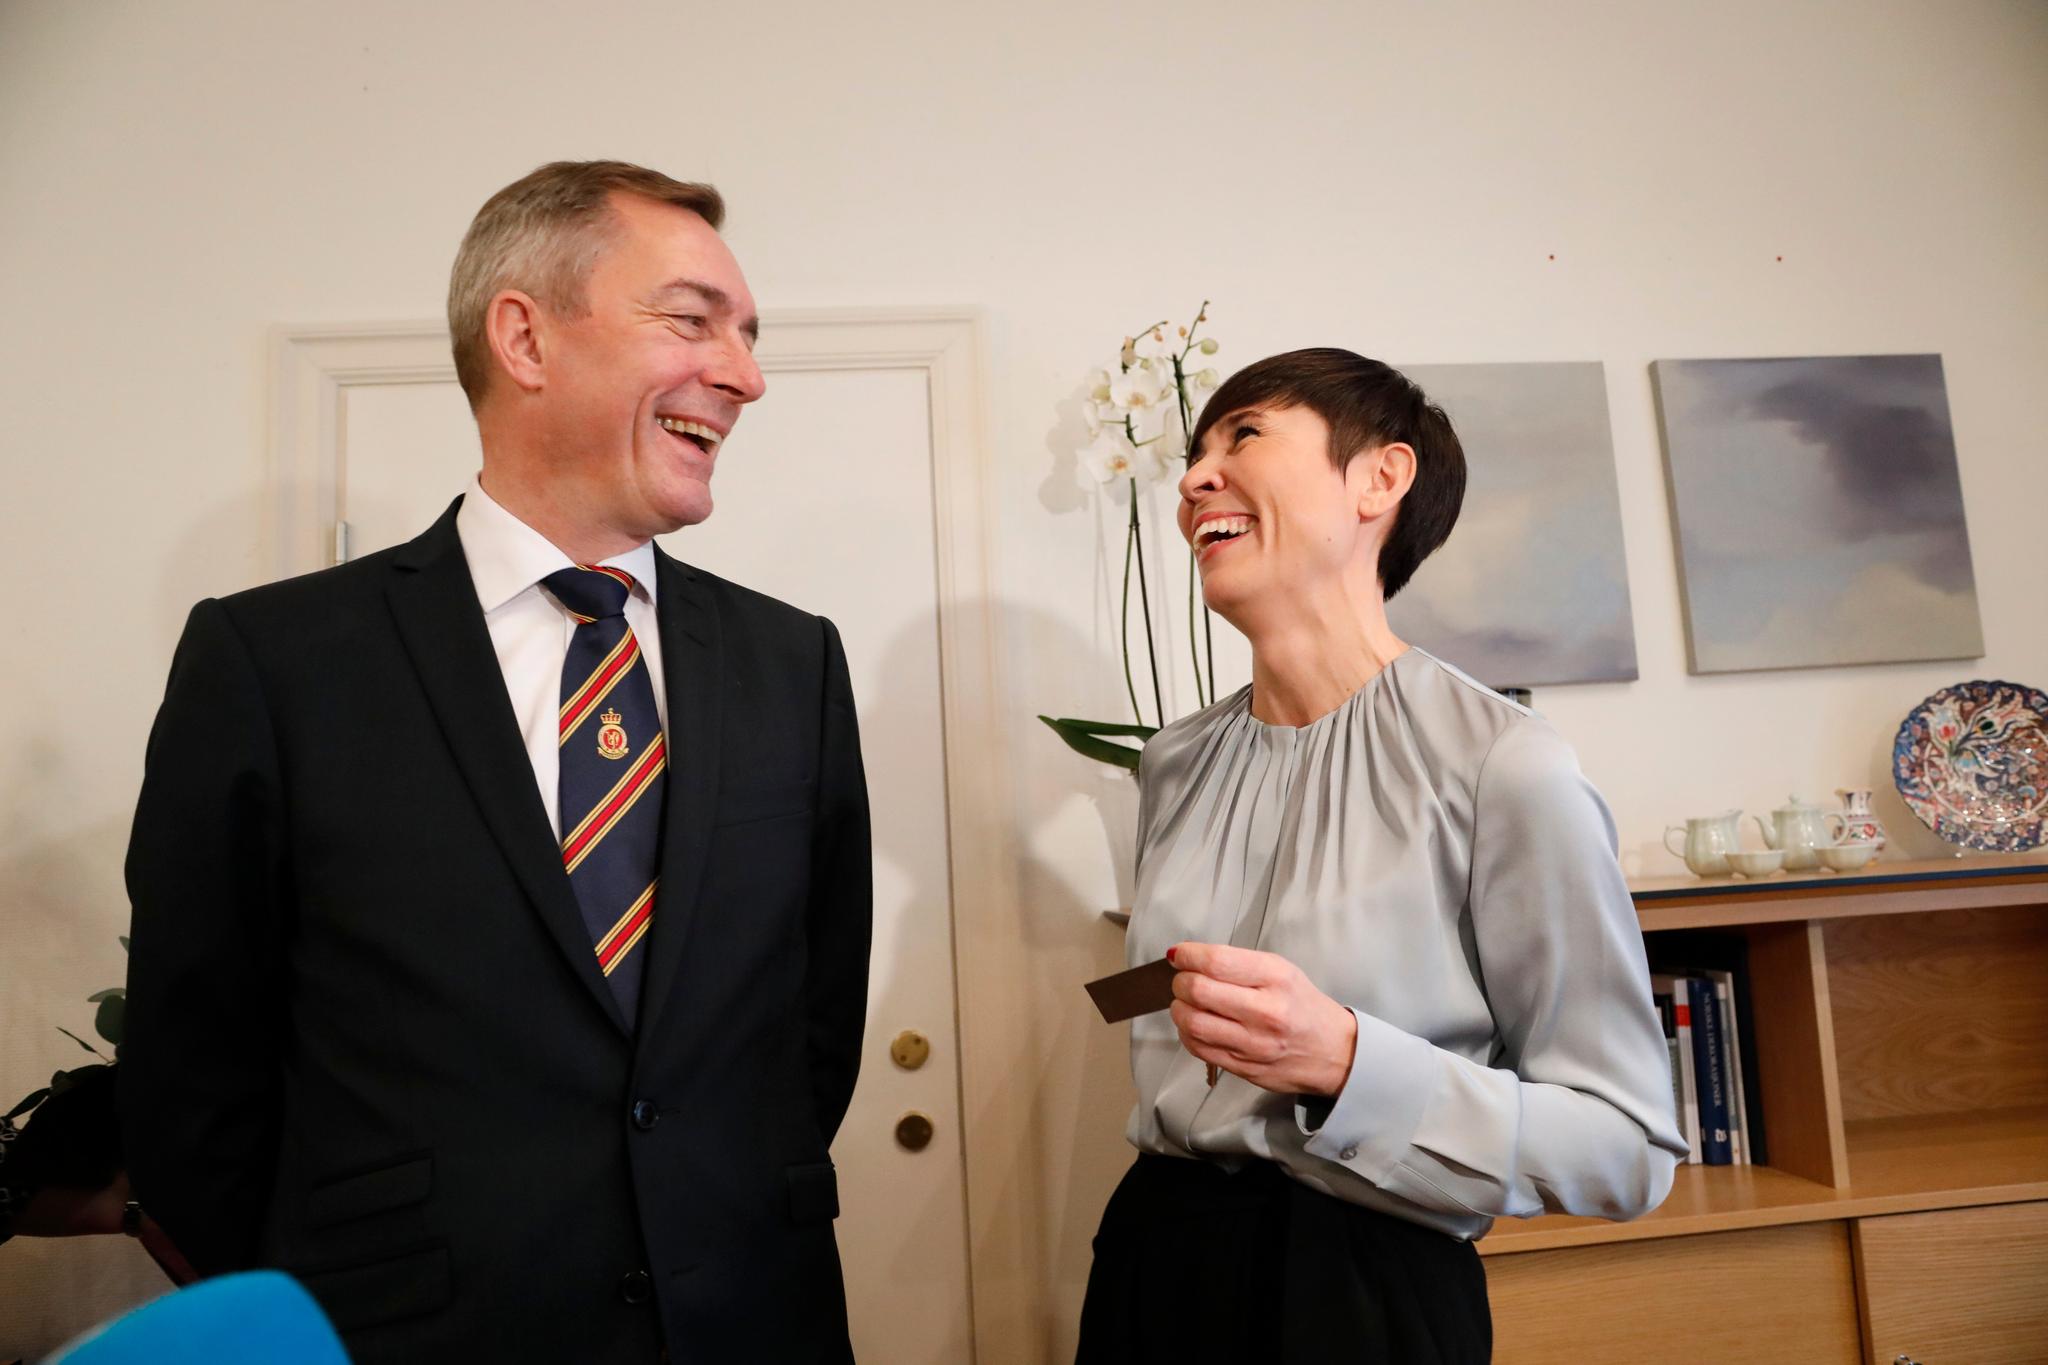 Det ble et gemyttlig møte mellom påtroppende utenriksminister Ine Eriksen Søreide (H) og påtroppende forsvarsminister Frank Bakke-Jensen (H) på førstnevntes kontor fredag ettermiddag.